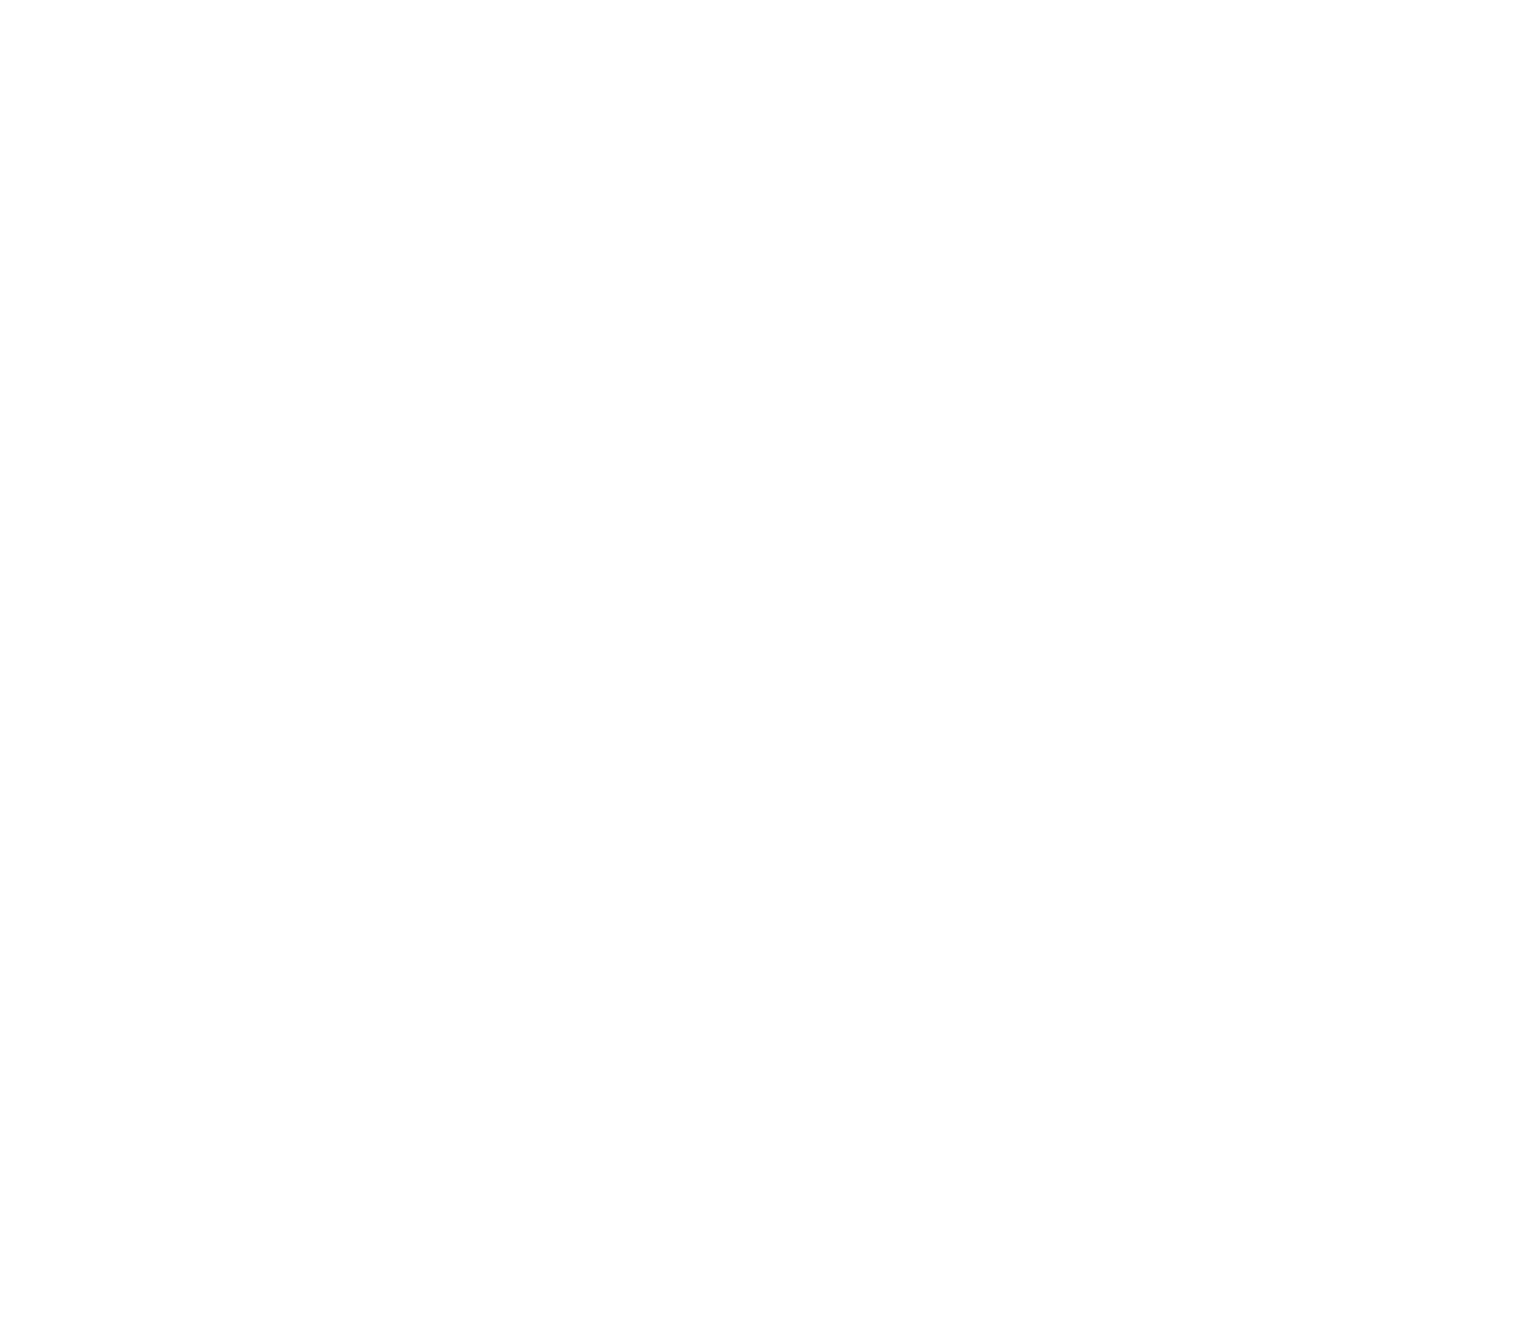 Tata Motors logo large for dark backgrounds (transparent PNG)